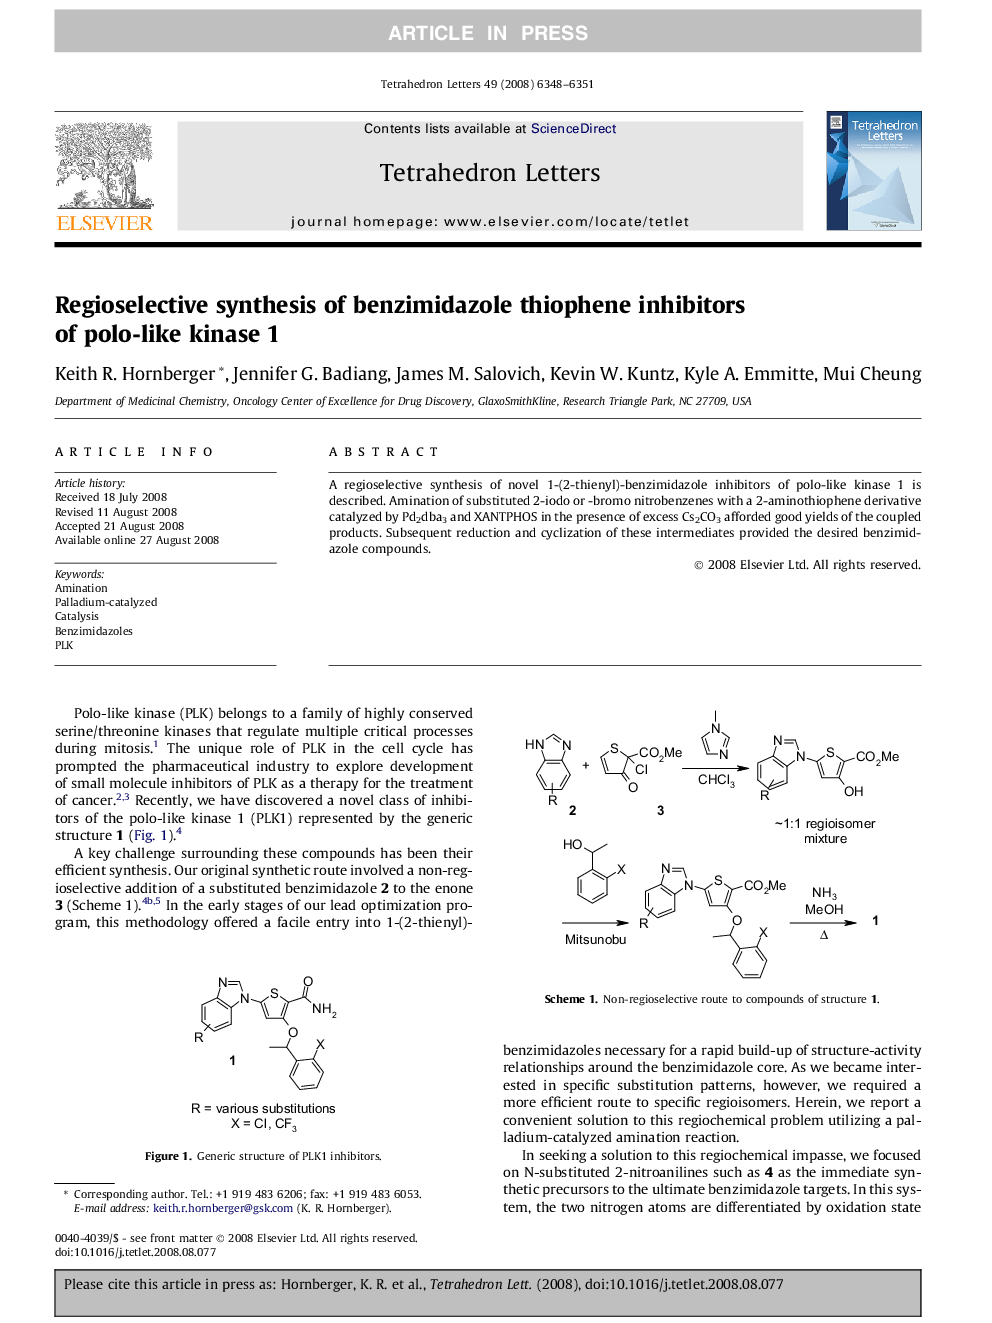 Regioselective synthesis of benzimidazole thiophene inhibitors of polo-like kinase 1